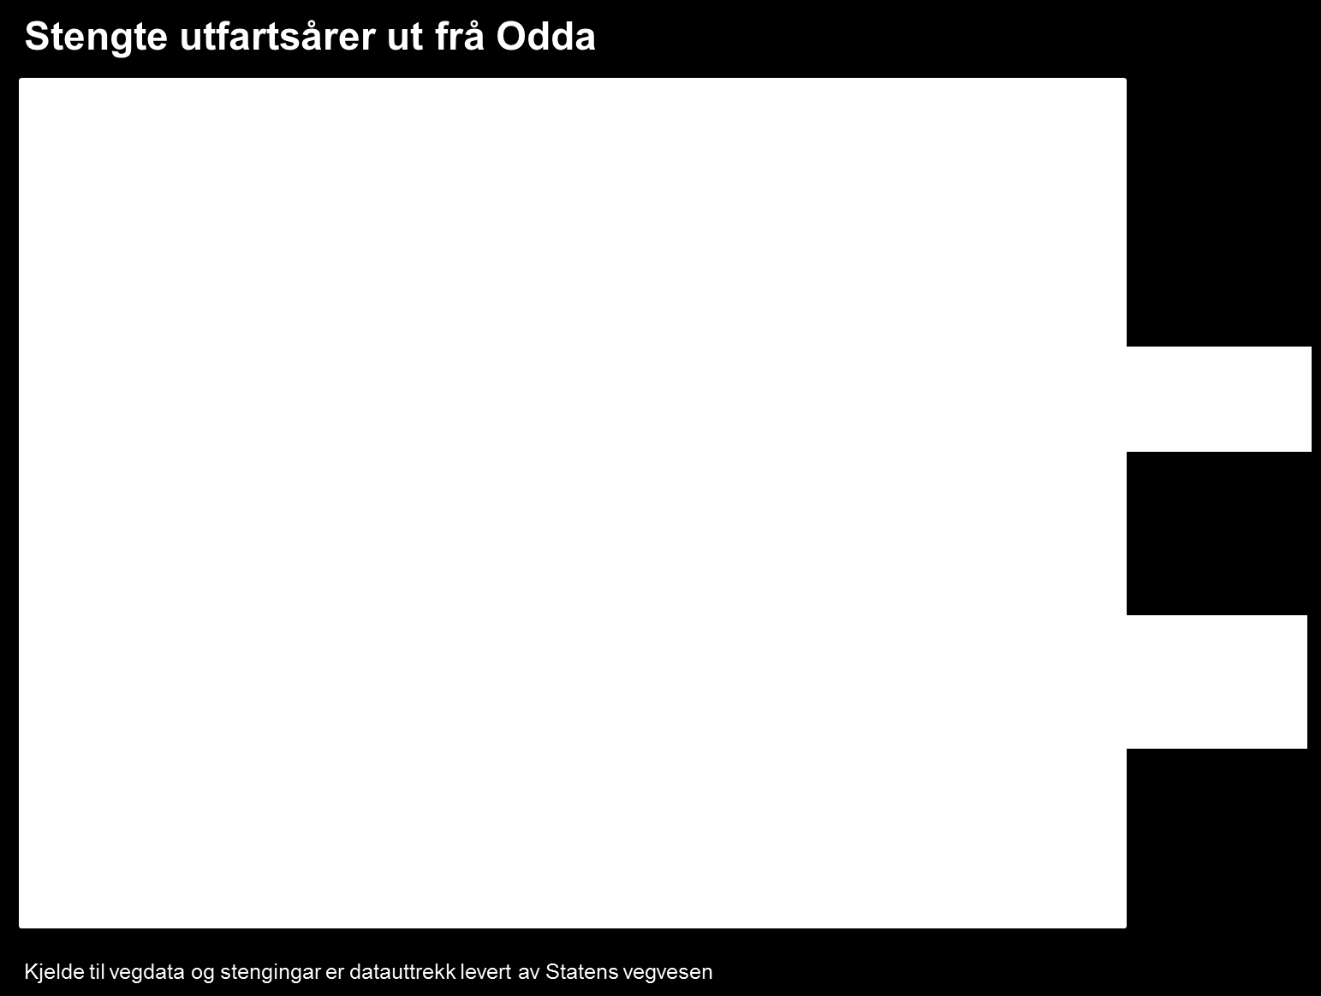 vedlegg 2). Det er vegen mellom Odda og Utne som har vore stengt flest gongar både i 2014 og 2015, mens det er vegen mellom Odda og Årsnes som i gjennomsnitt var lengst stengt kvar gong.